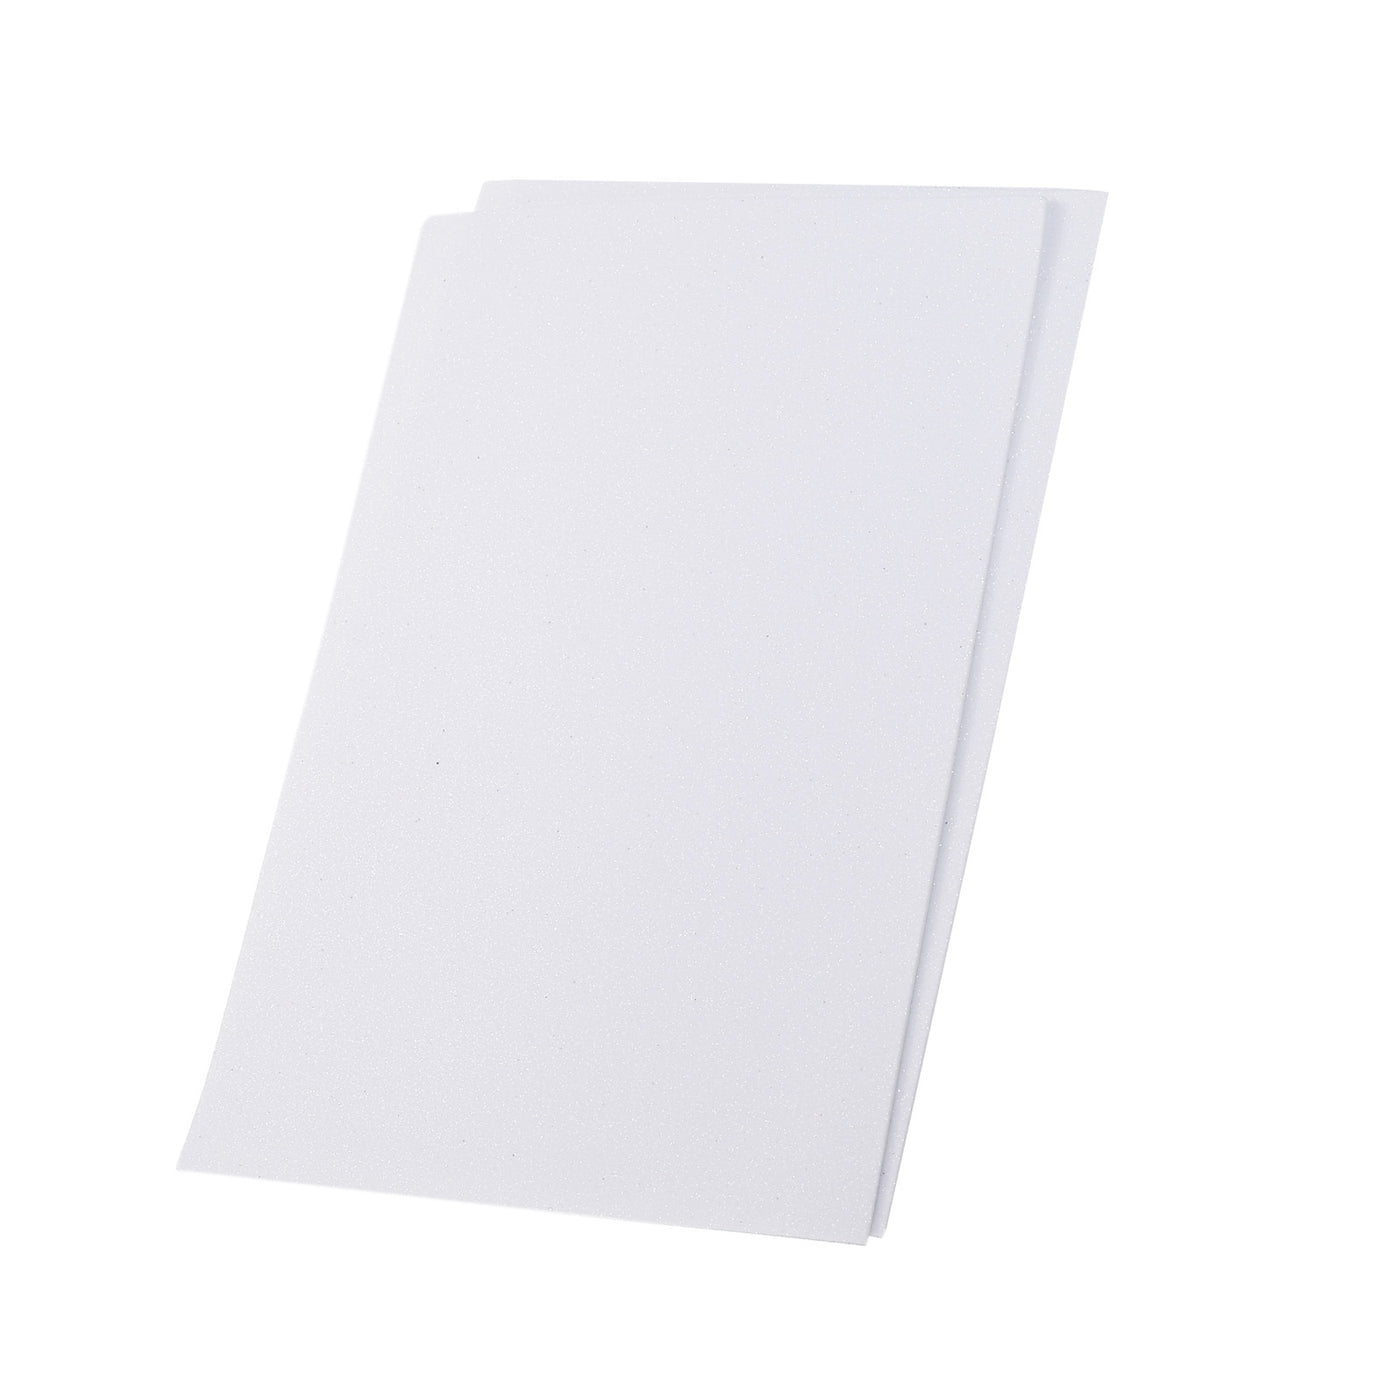 Harfington Glitter EVA Foam Sheets Soft Paper Self-Adhesive 11.8 x 7.8 Inch White 2 Pcs